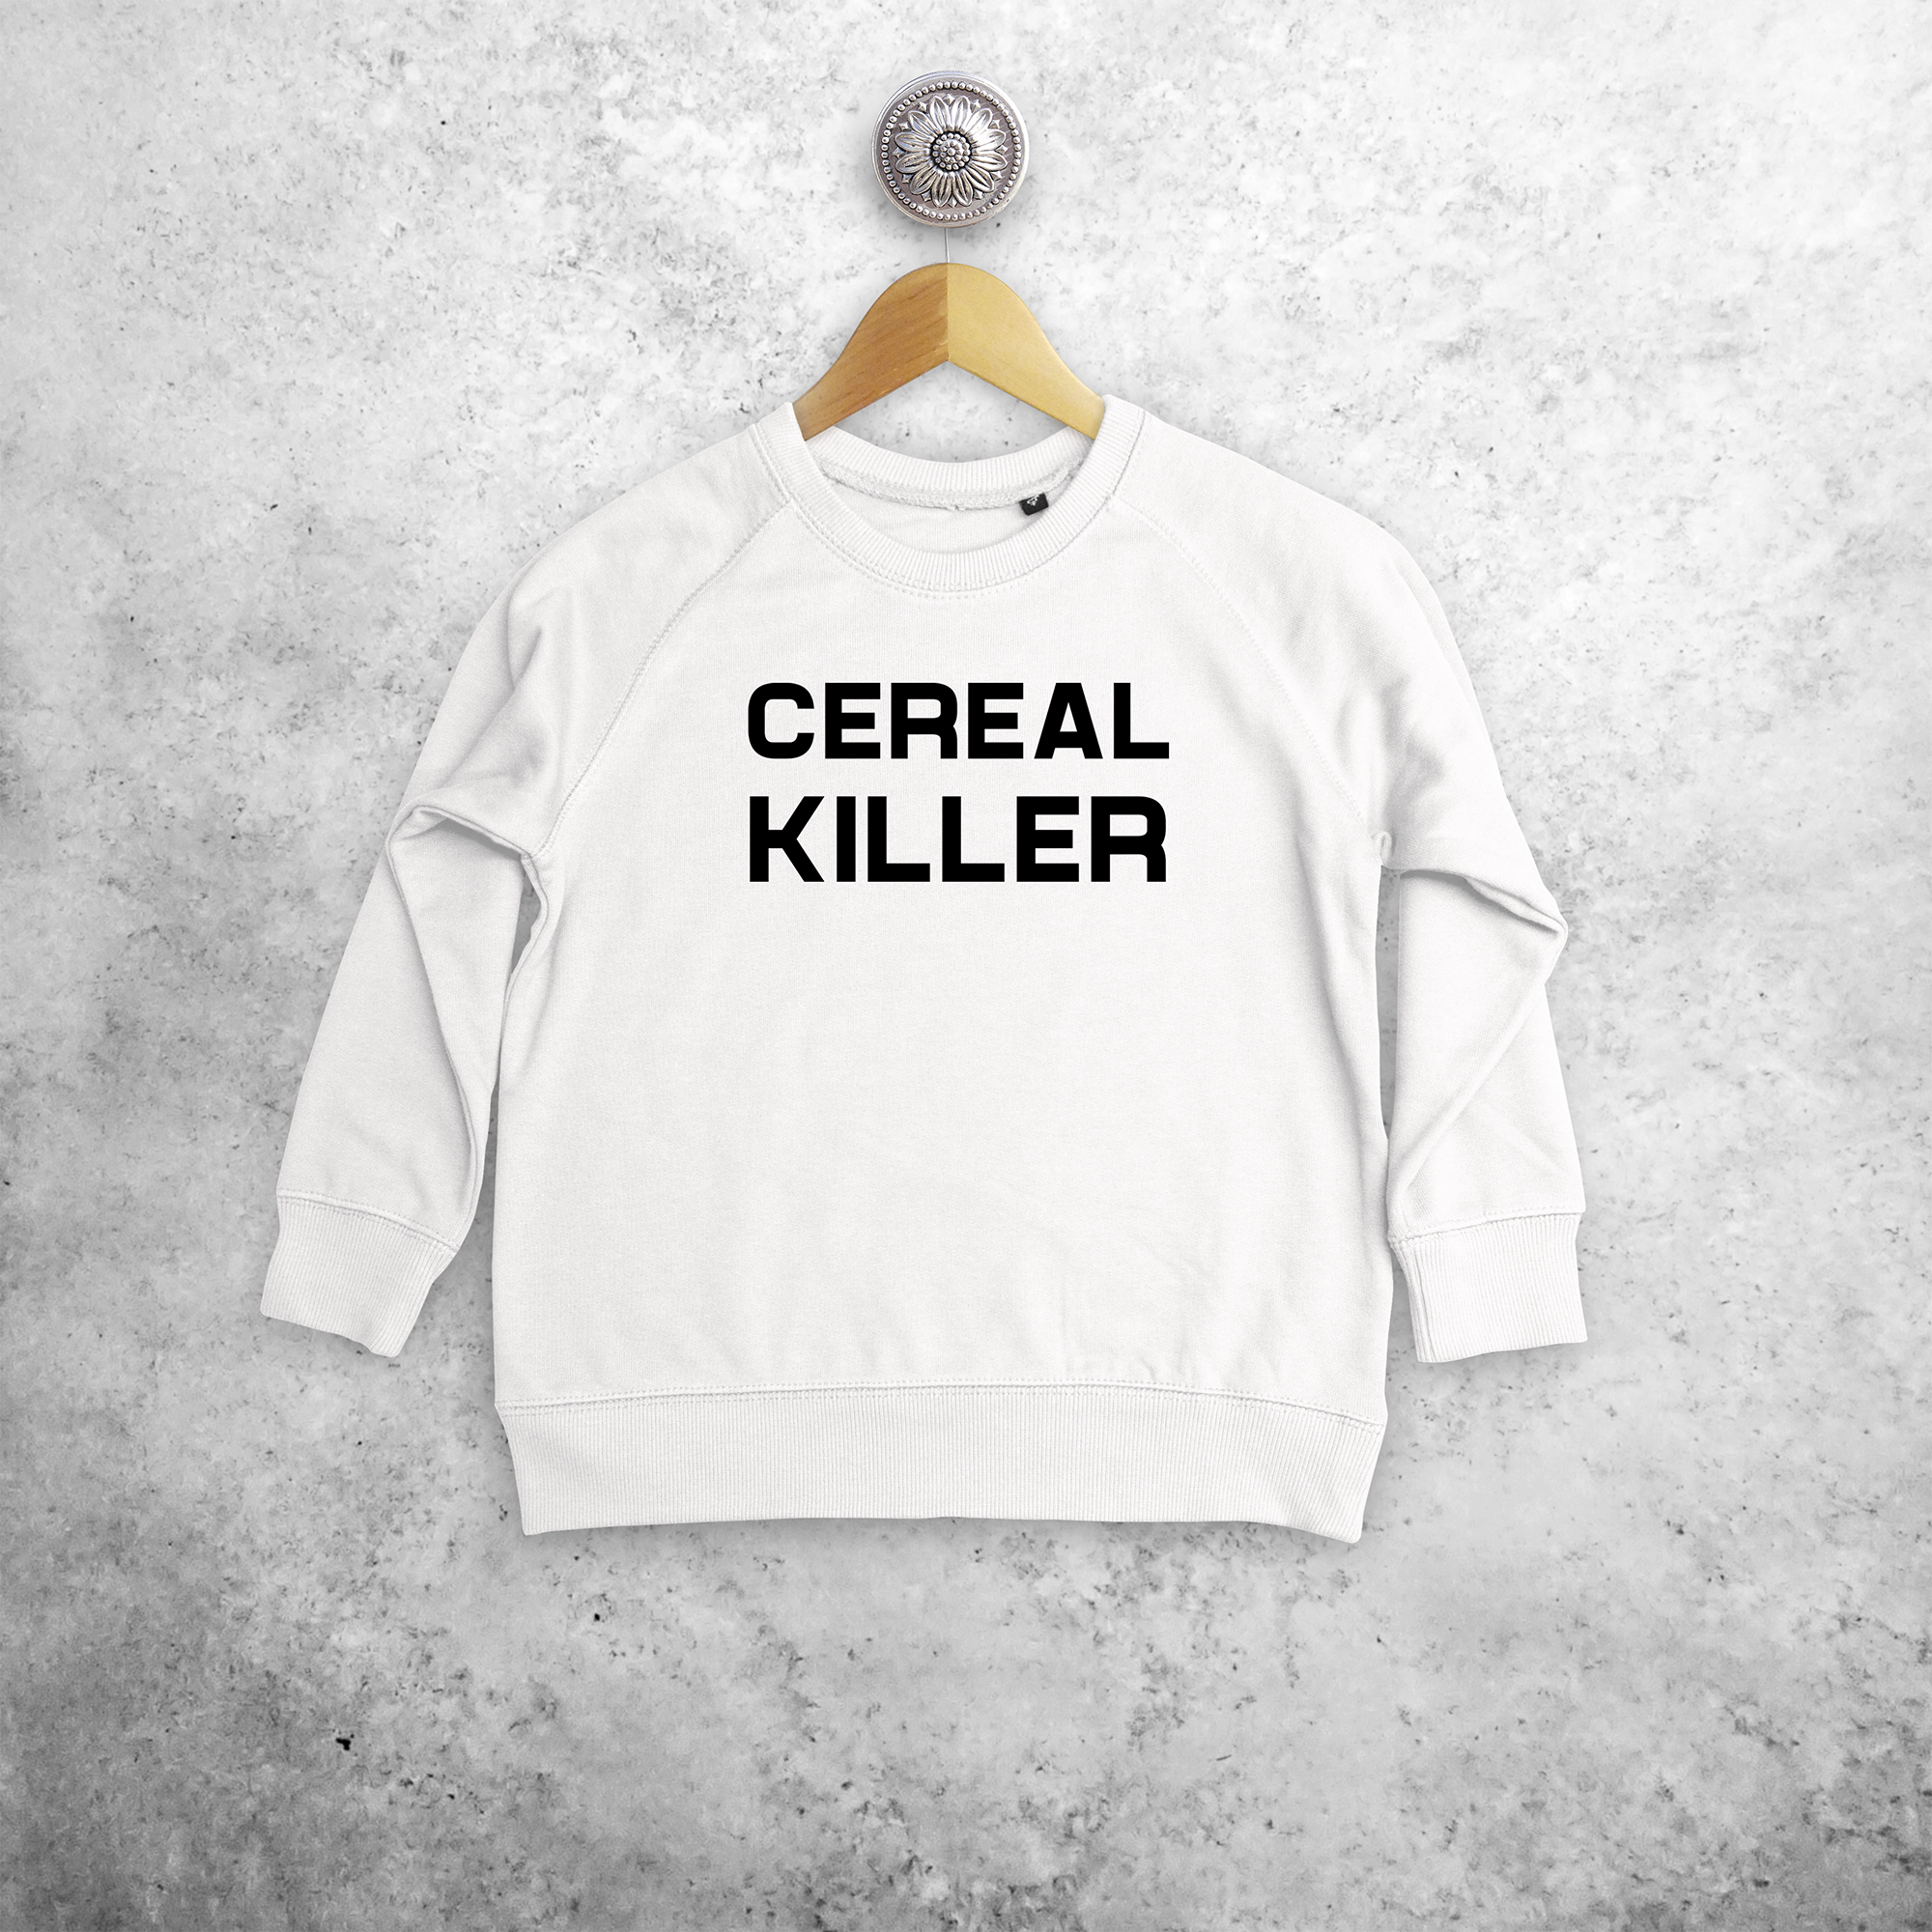 'Cereal killer' kids sweater